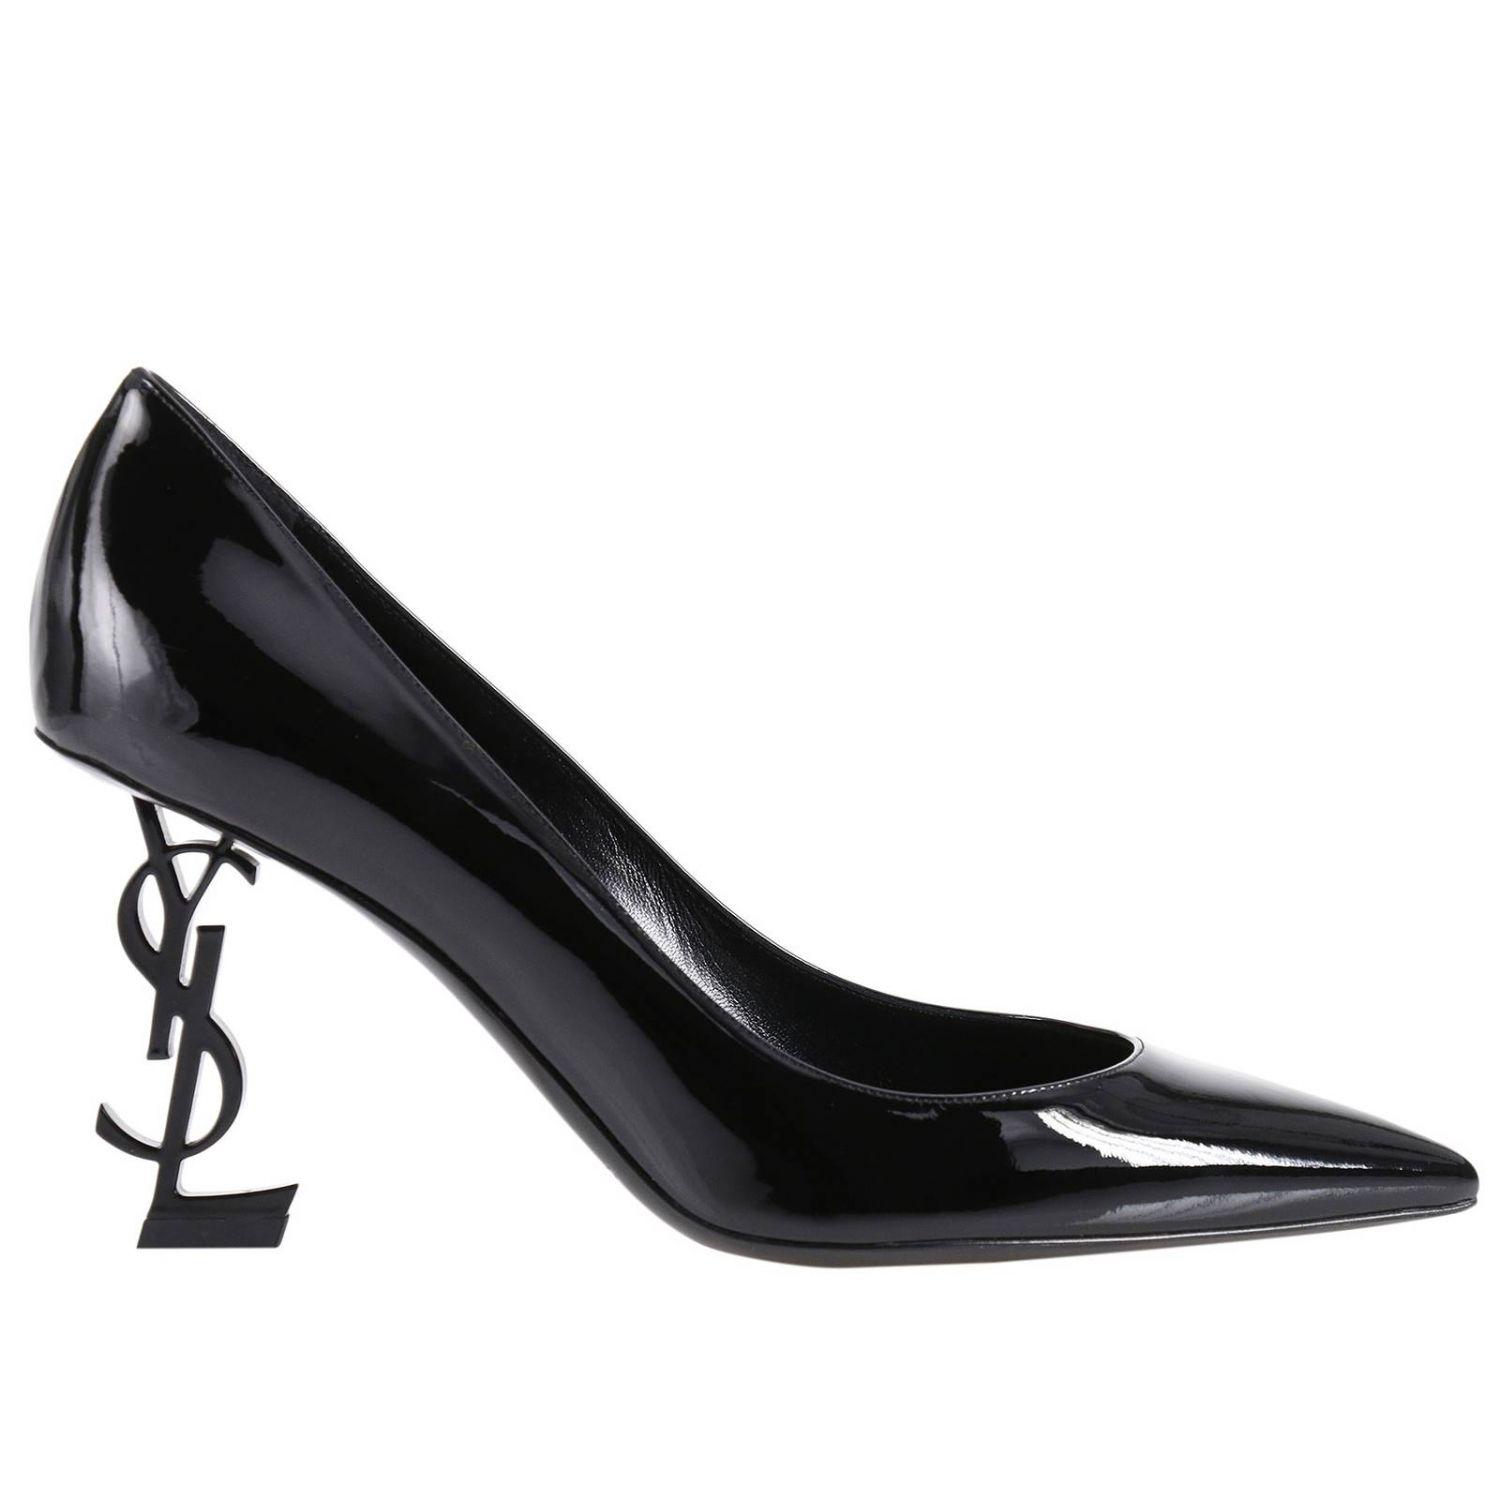 Lyst - Saint Laurent Shoes Women in Black